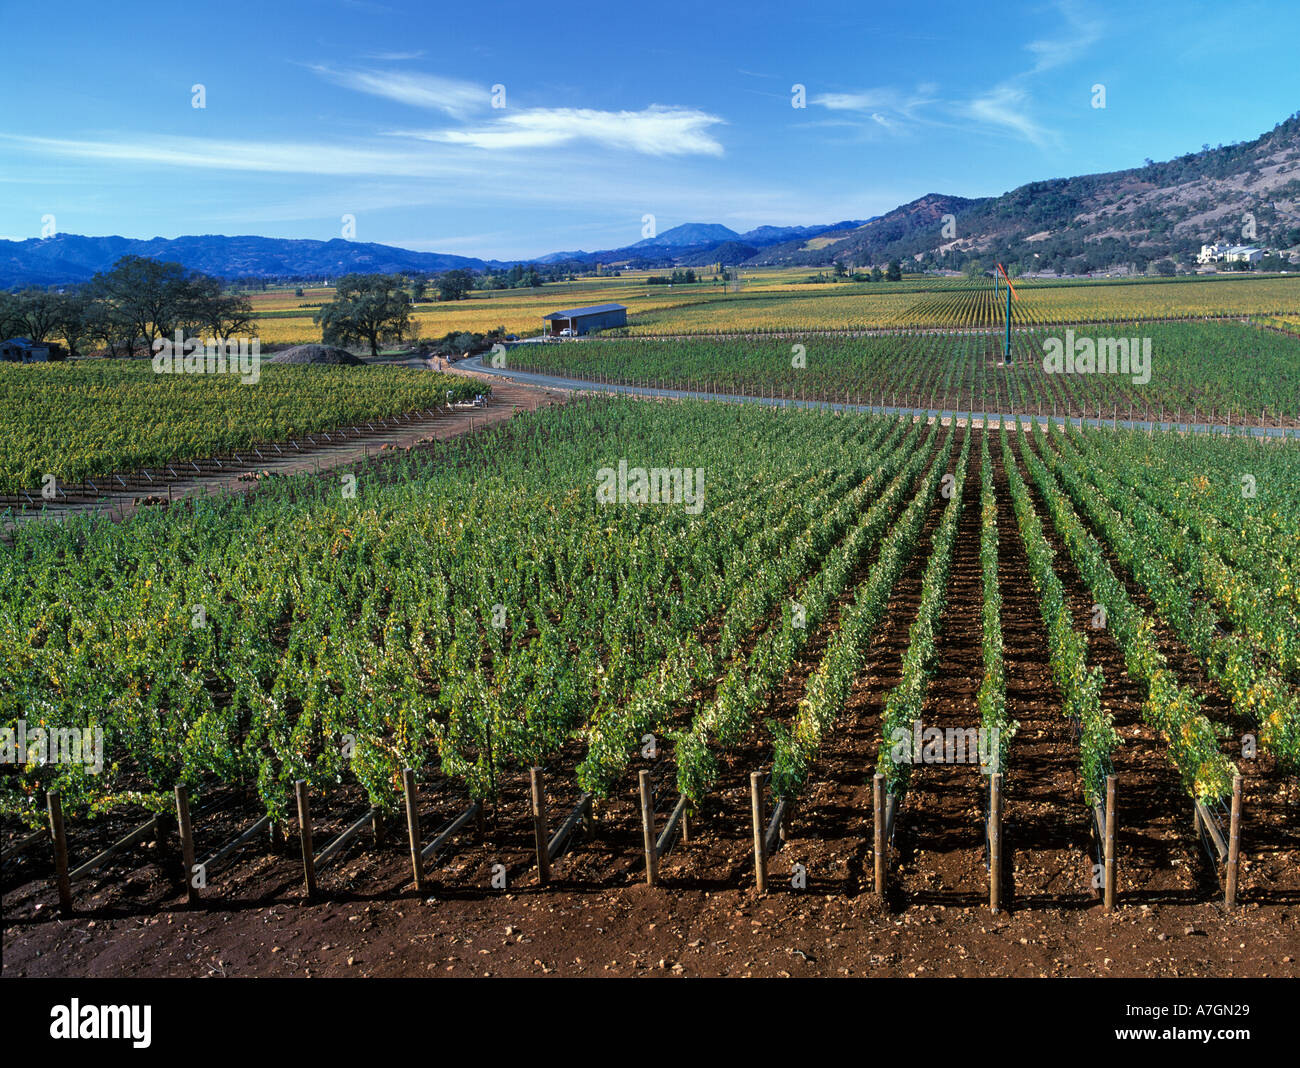 California, Napa Valley Ava, Oakville, vineyards along the Silverado Trail, Miner Family Winery on right Stock Photo